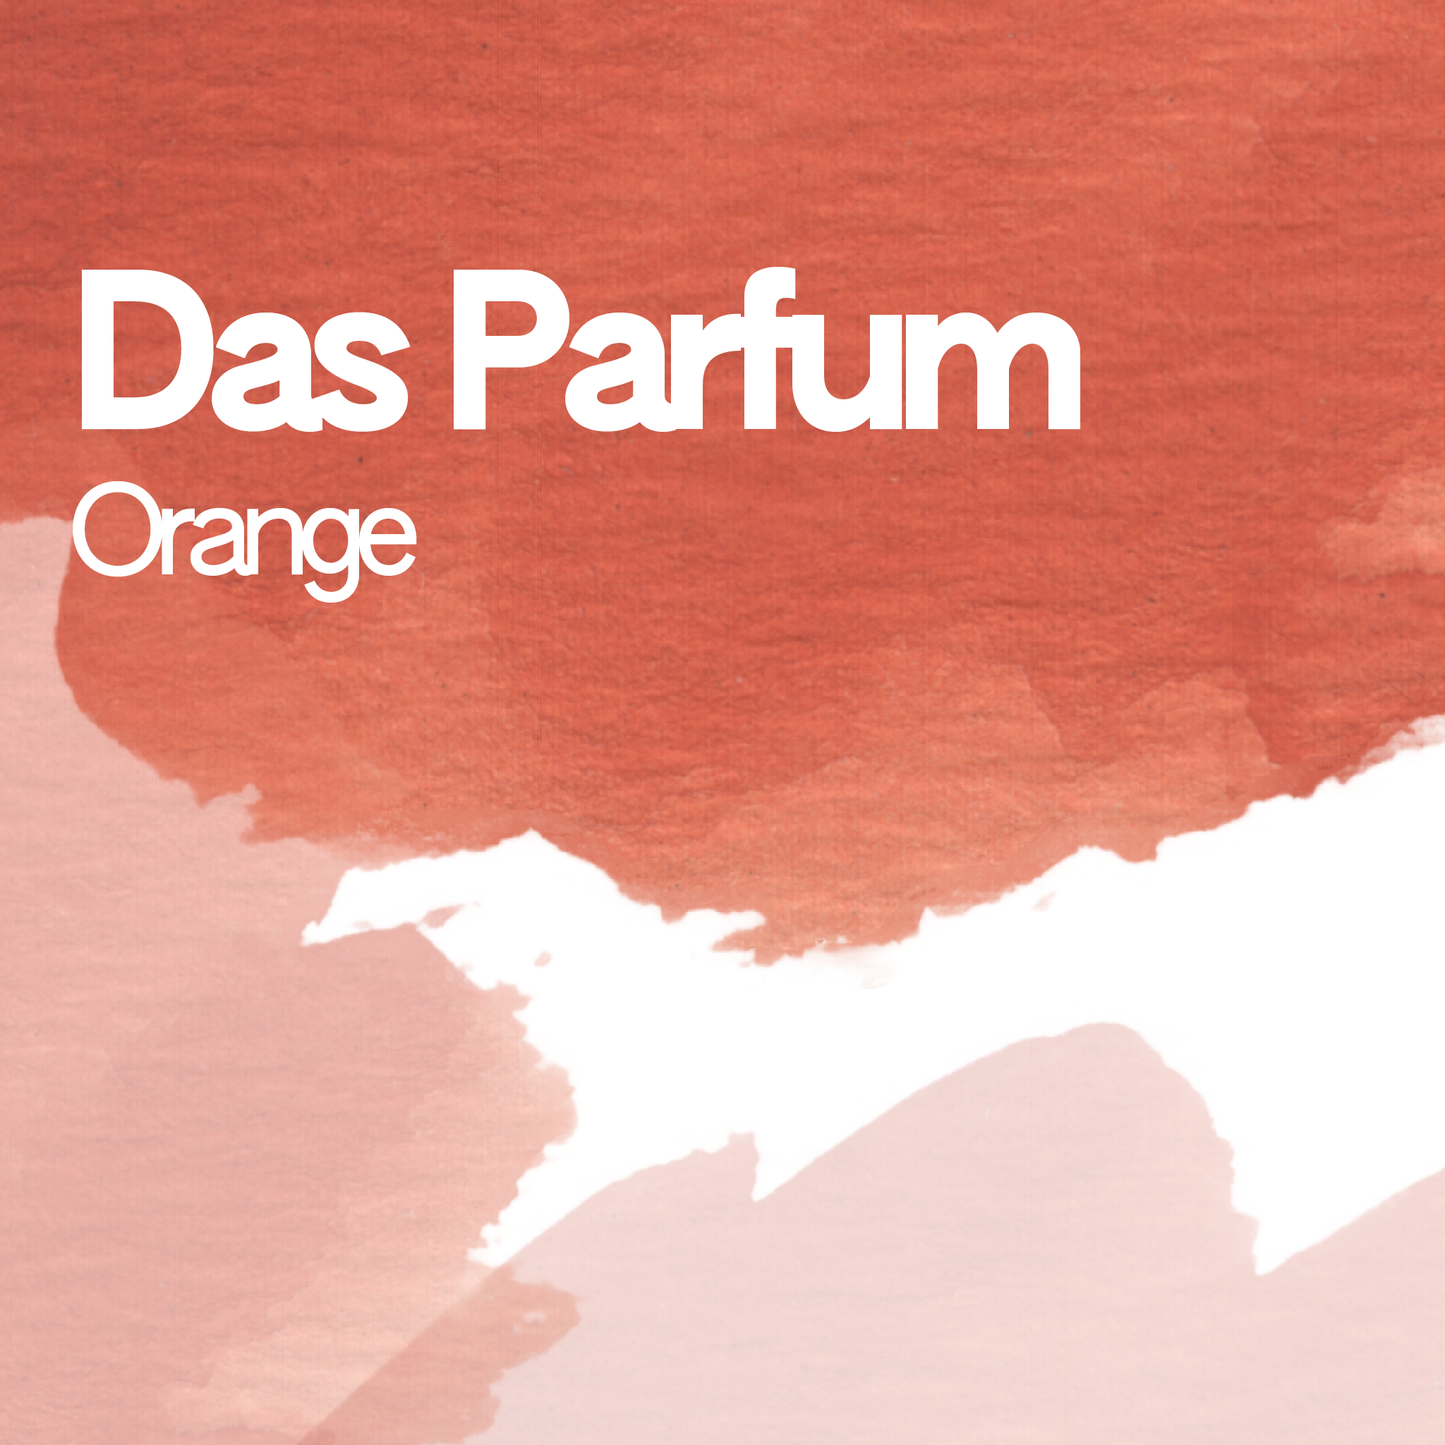 Das Parfum Orange aquarelle artisanale vegan 